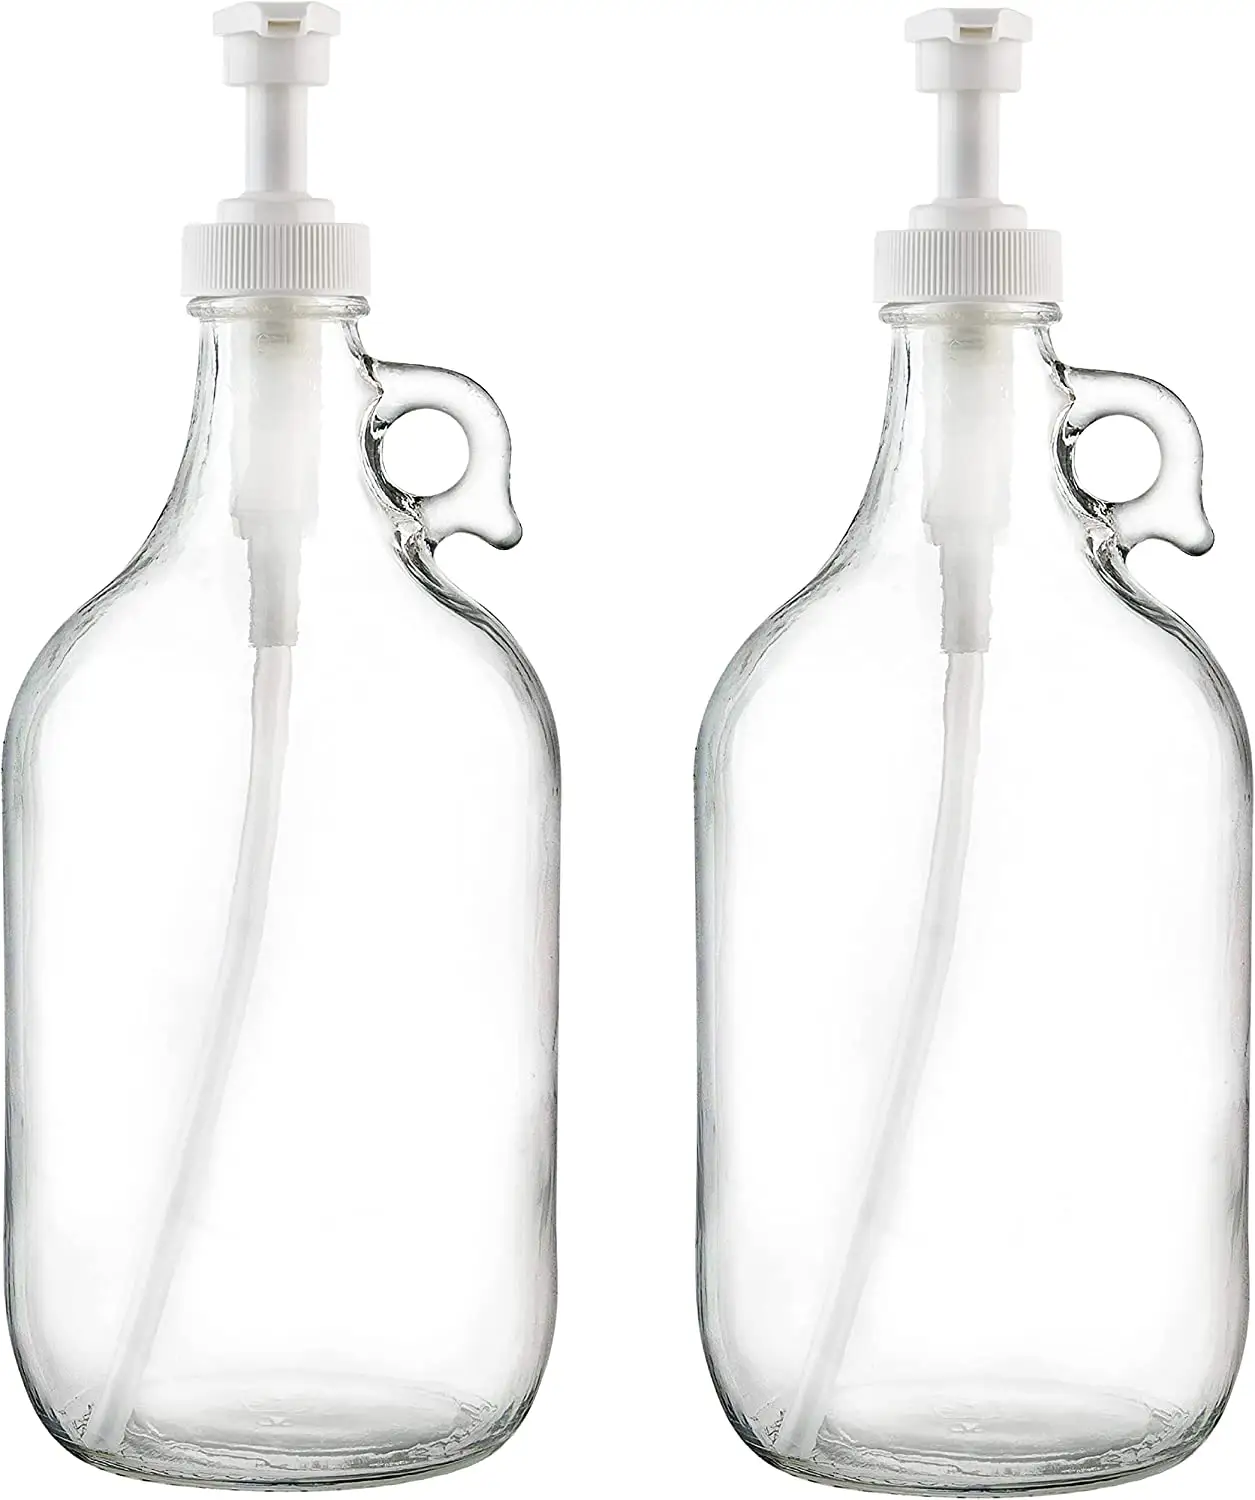 Half Gallon 64 oz Glas pumpensp ender flasche, großer Krug mit Pumpe für Waschseifen spender, Weichspüler für Flüssig waschmittel